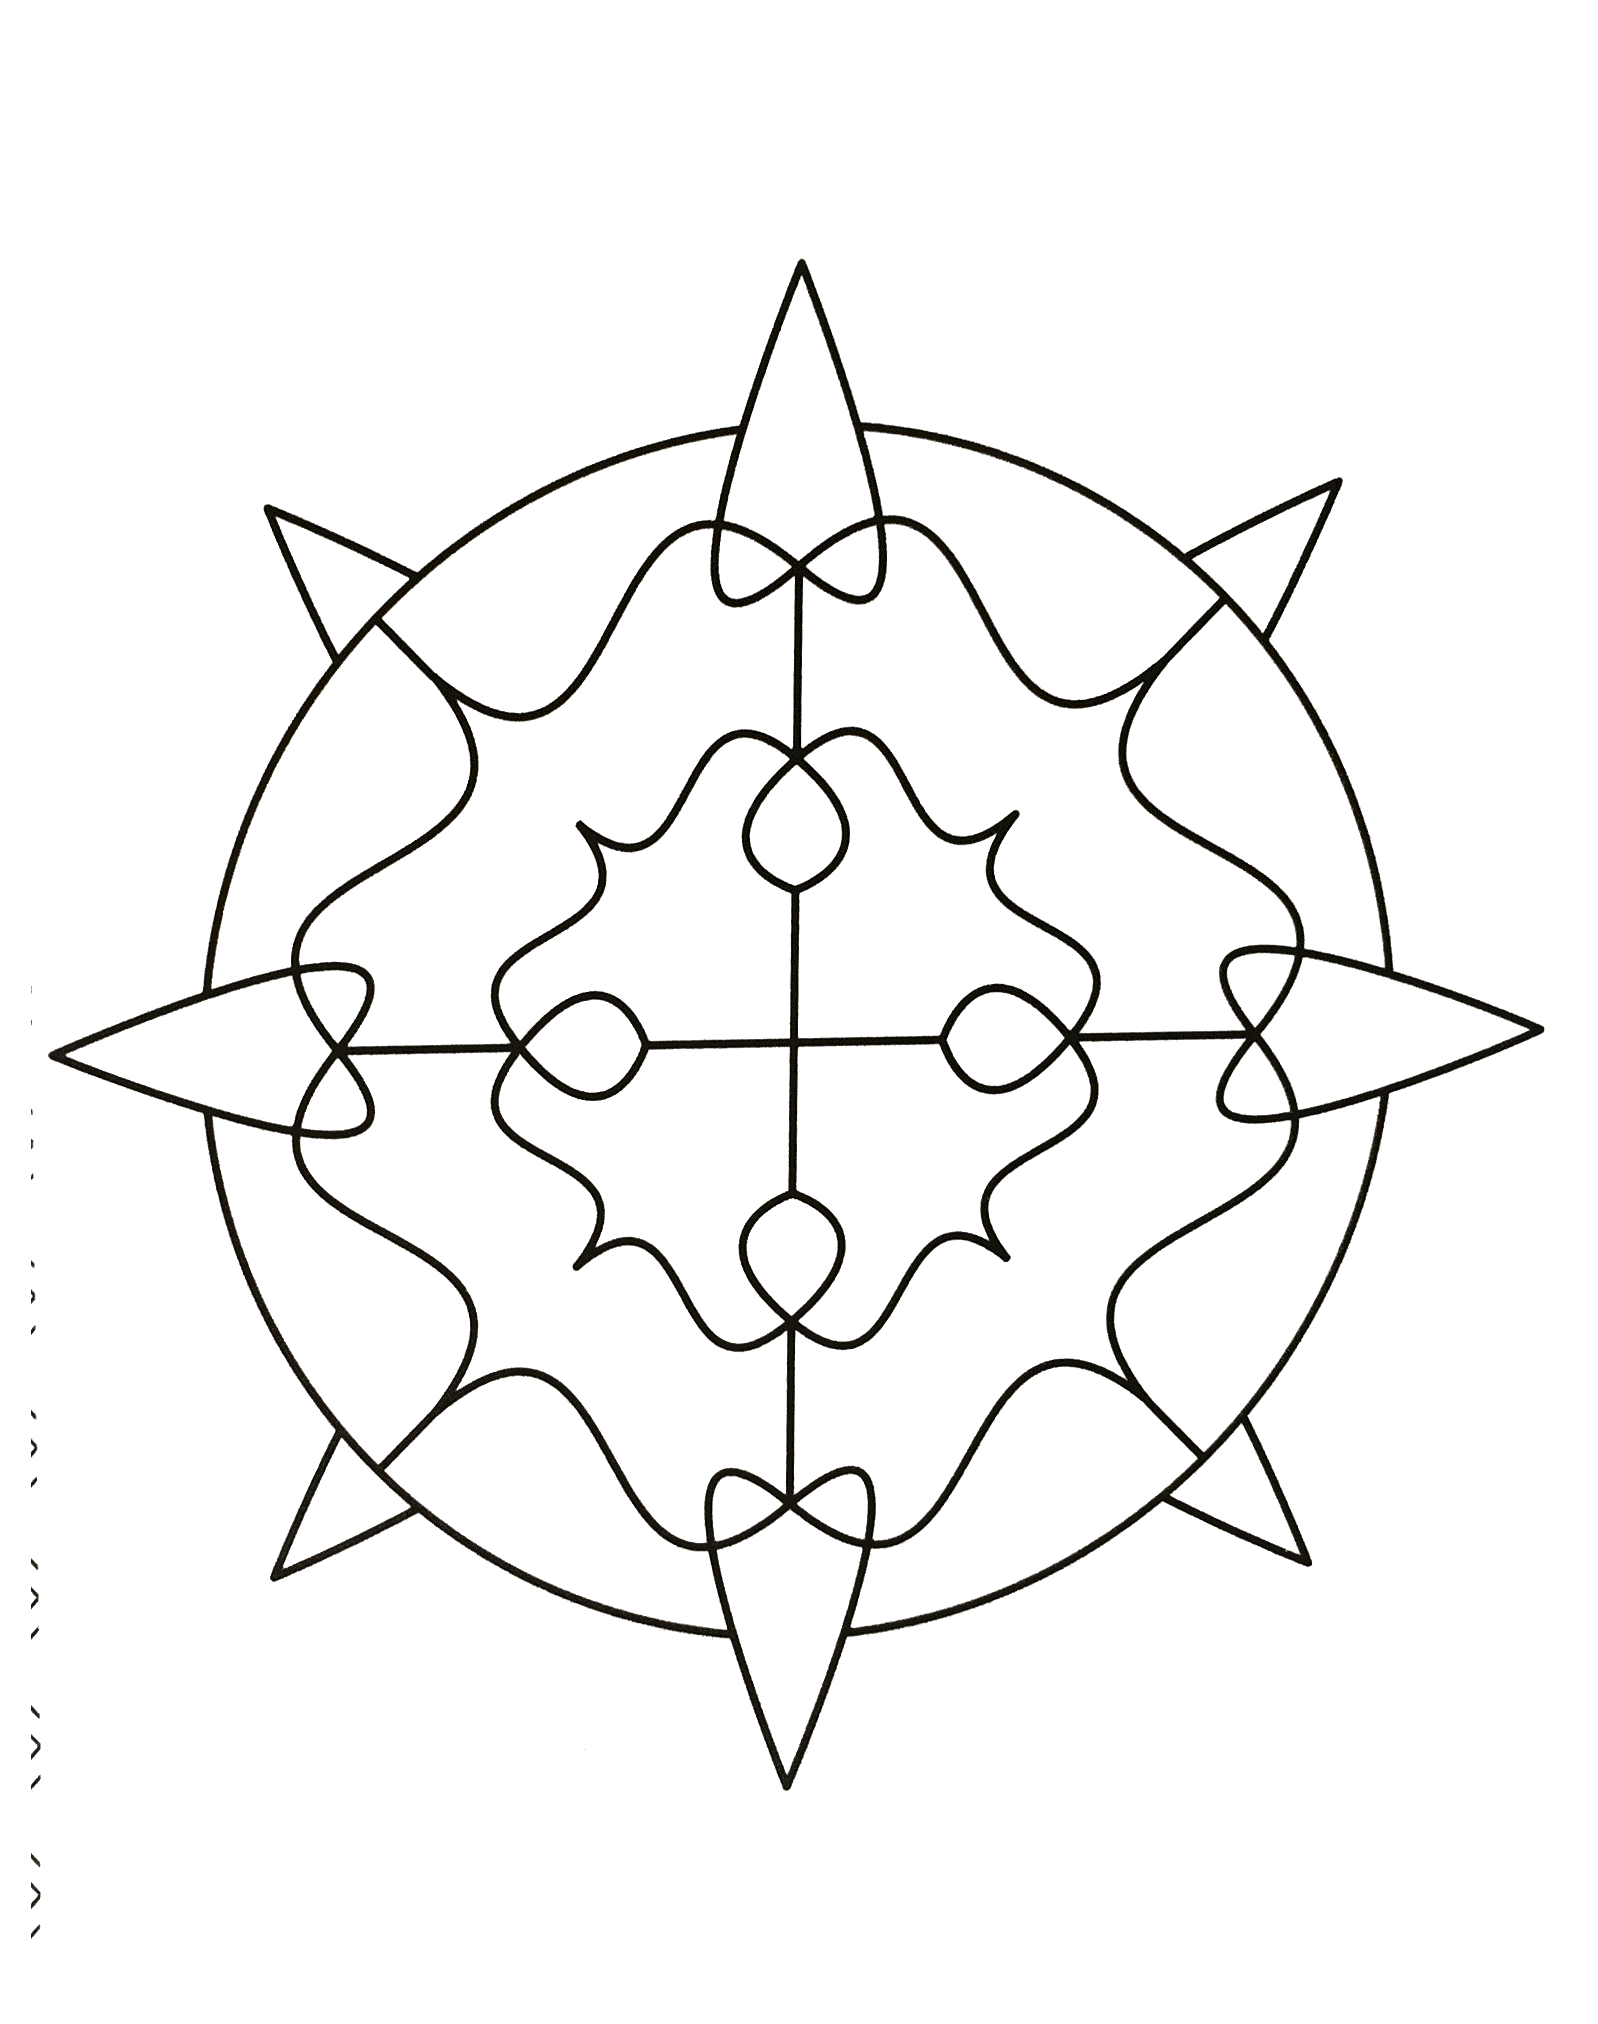 Entspannen Sie sich mit diesem wunderschönen Mandala mit sehr regelmäßigen und symmetrischen Formen, die mit großem Talent gezeichnet wurden.